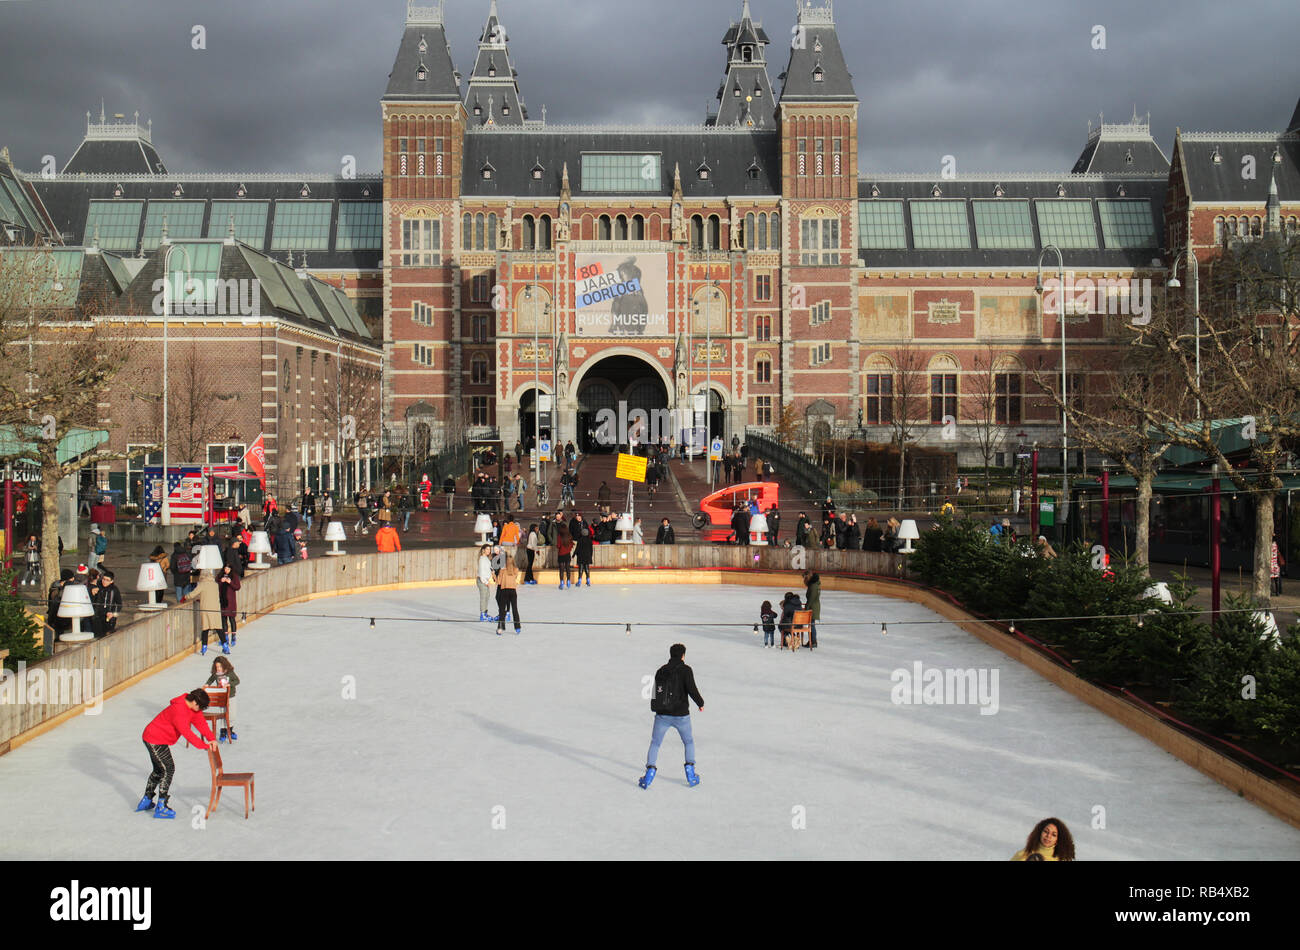 Patineurs sur glace à la place du musée, Amsterdam, en décembre avec le Rijksmuseum en arrière-plan Banque D'Images